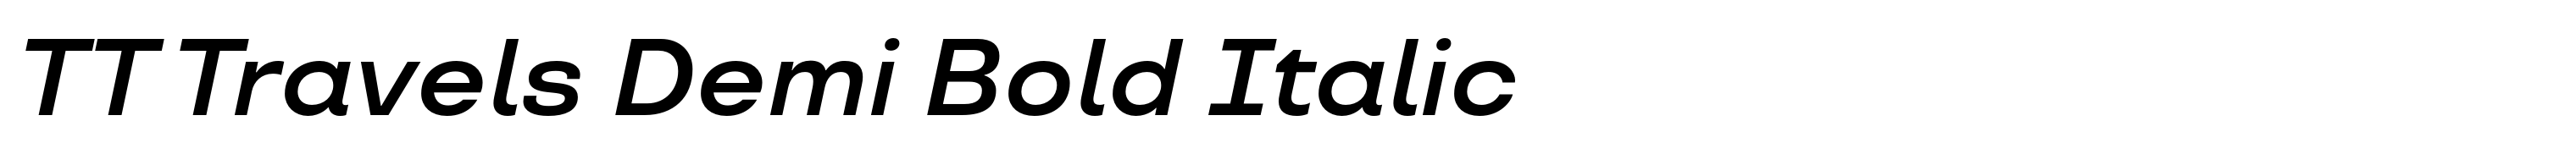 TT Travels Demi Bold Italic